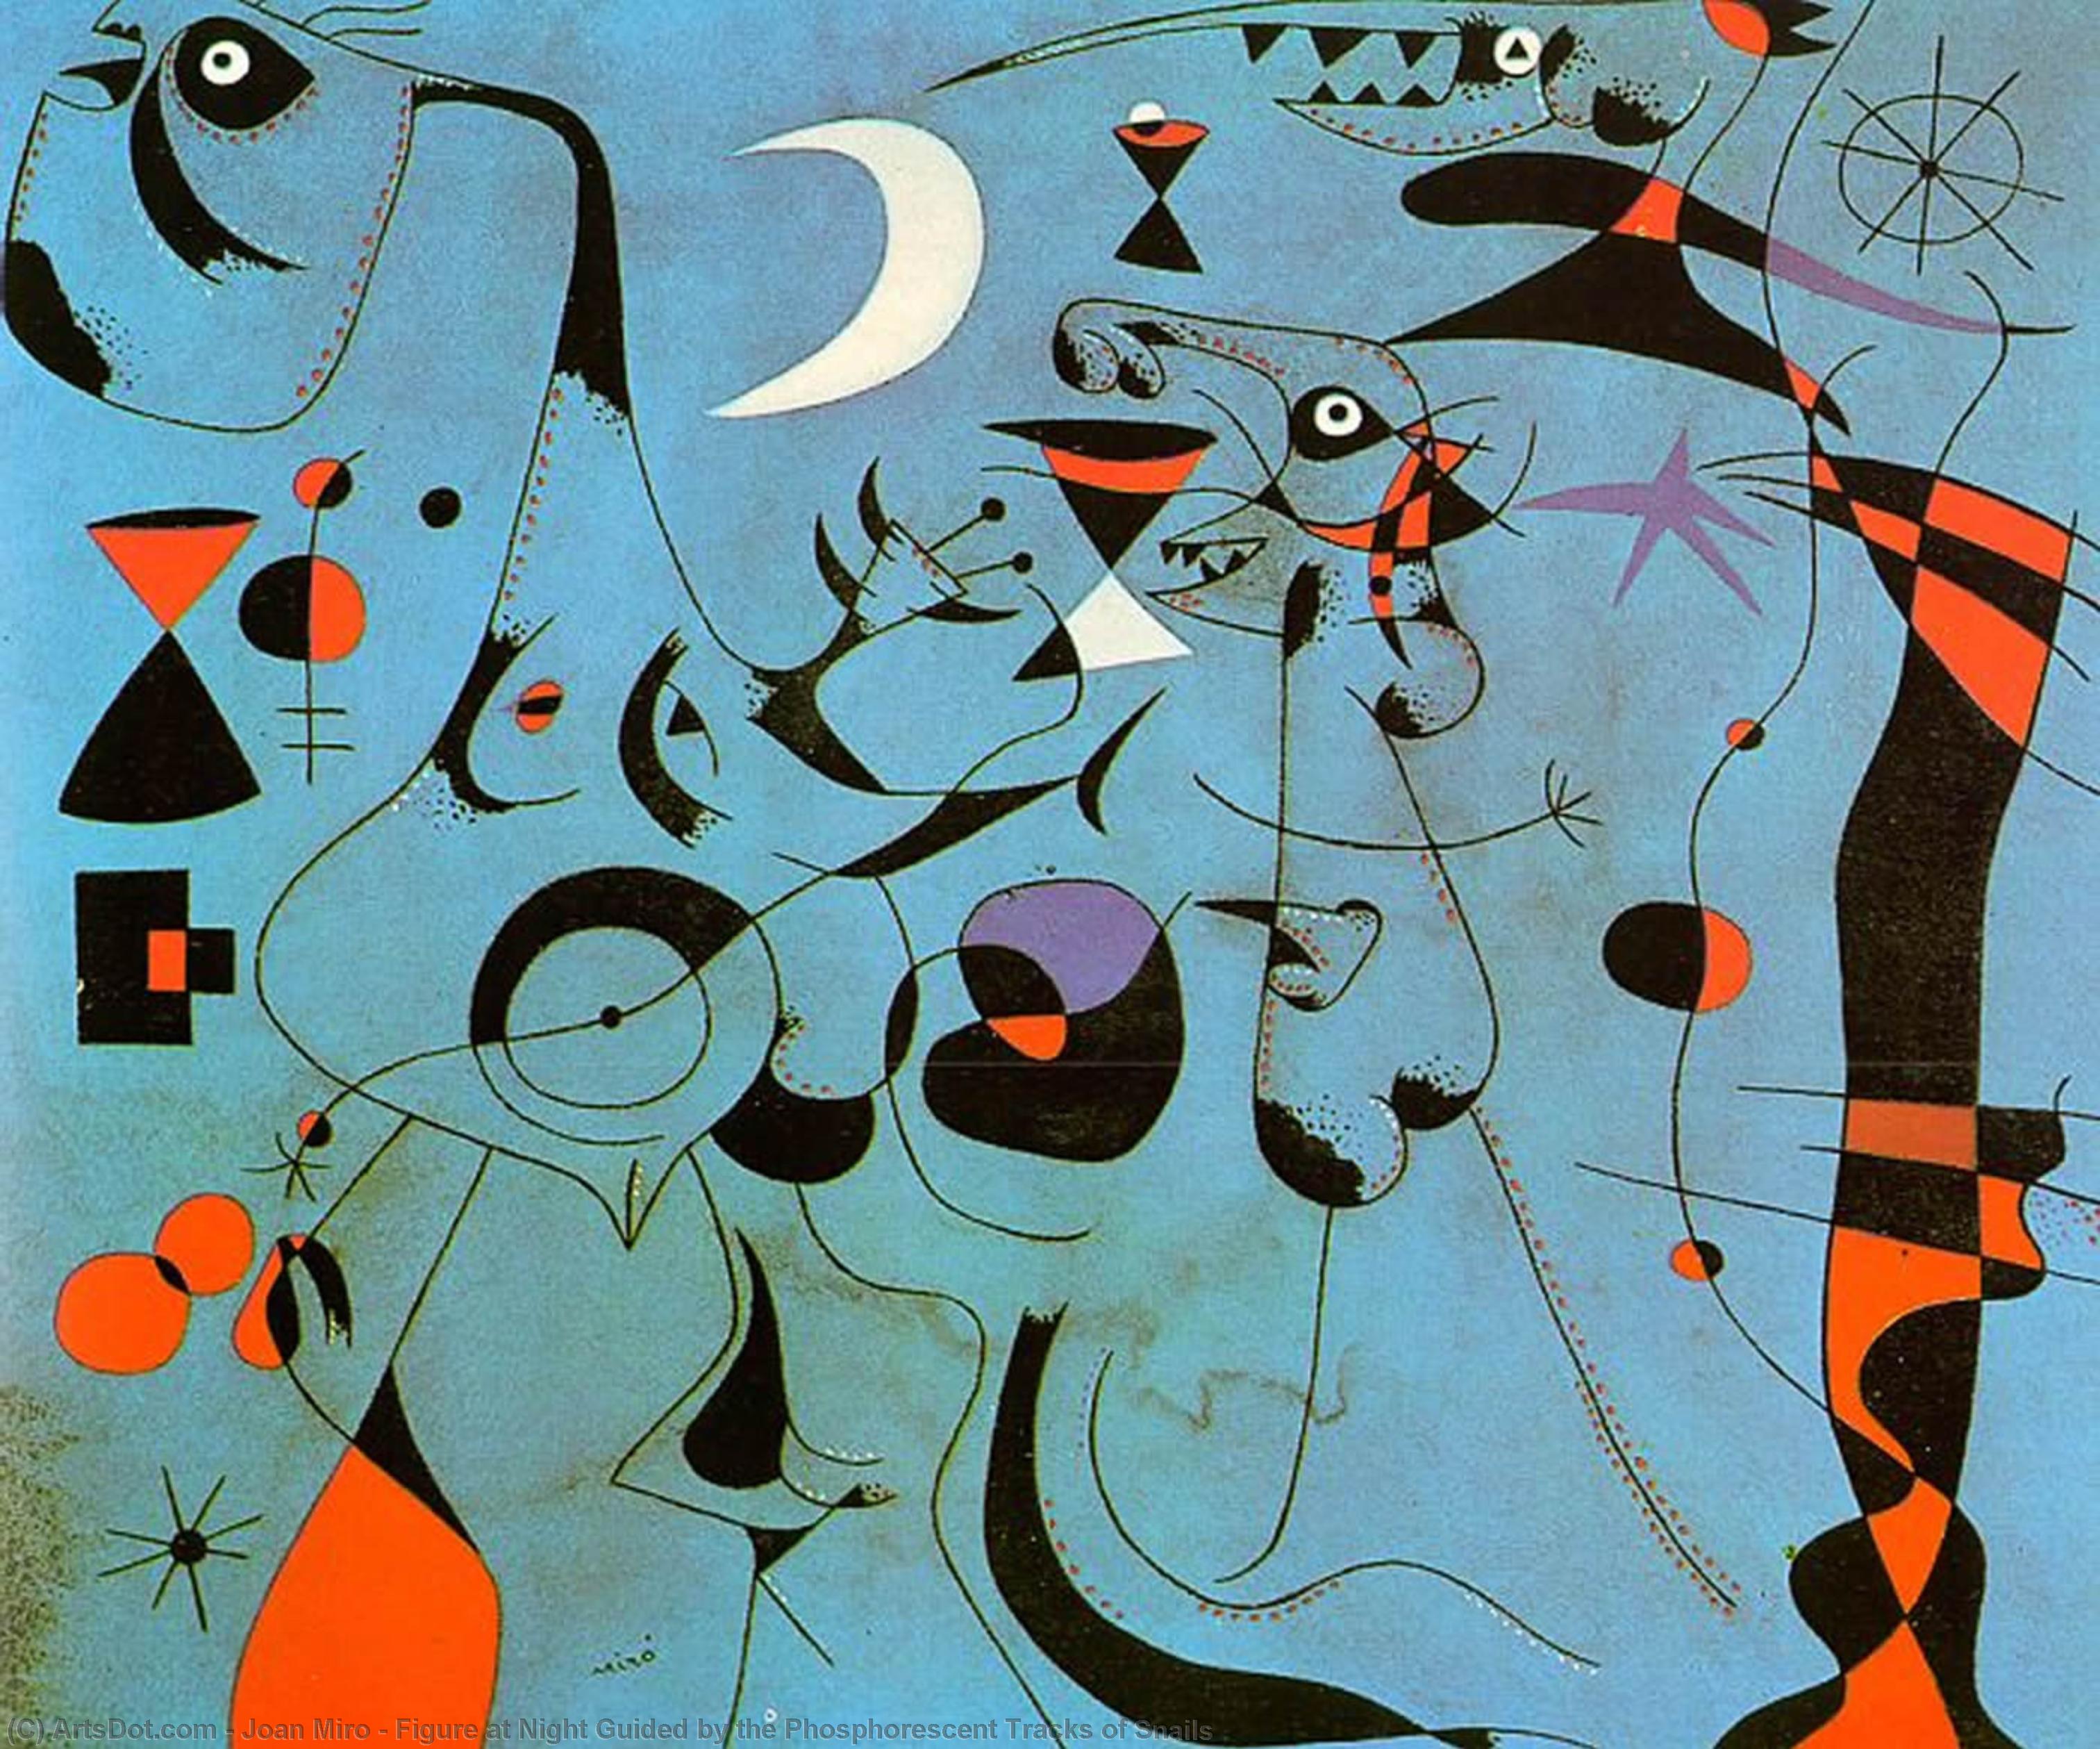 Wikoo.org - موسوعة الفنون الجميلة - اللوحة، العمل الفني Joan Miro - Figure at Night Guided by the Phosphorescent Tracks of Snails